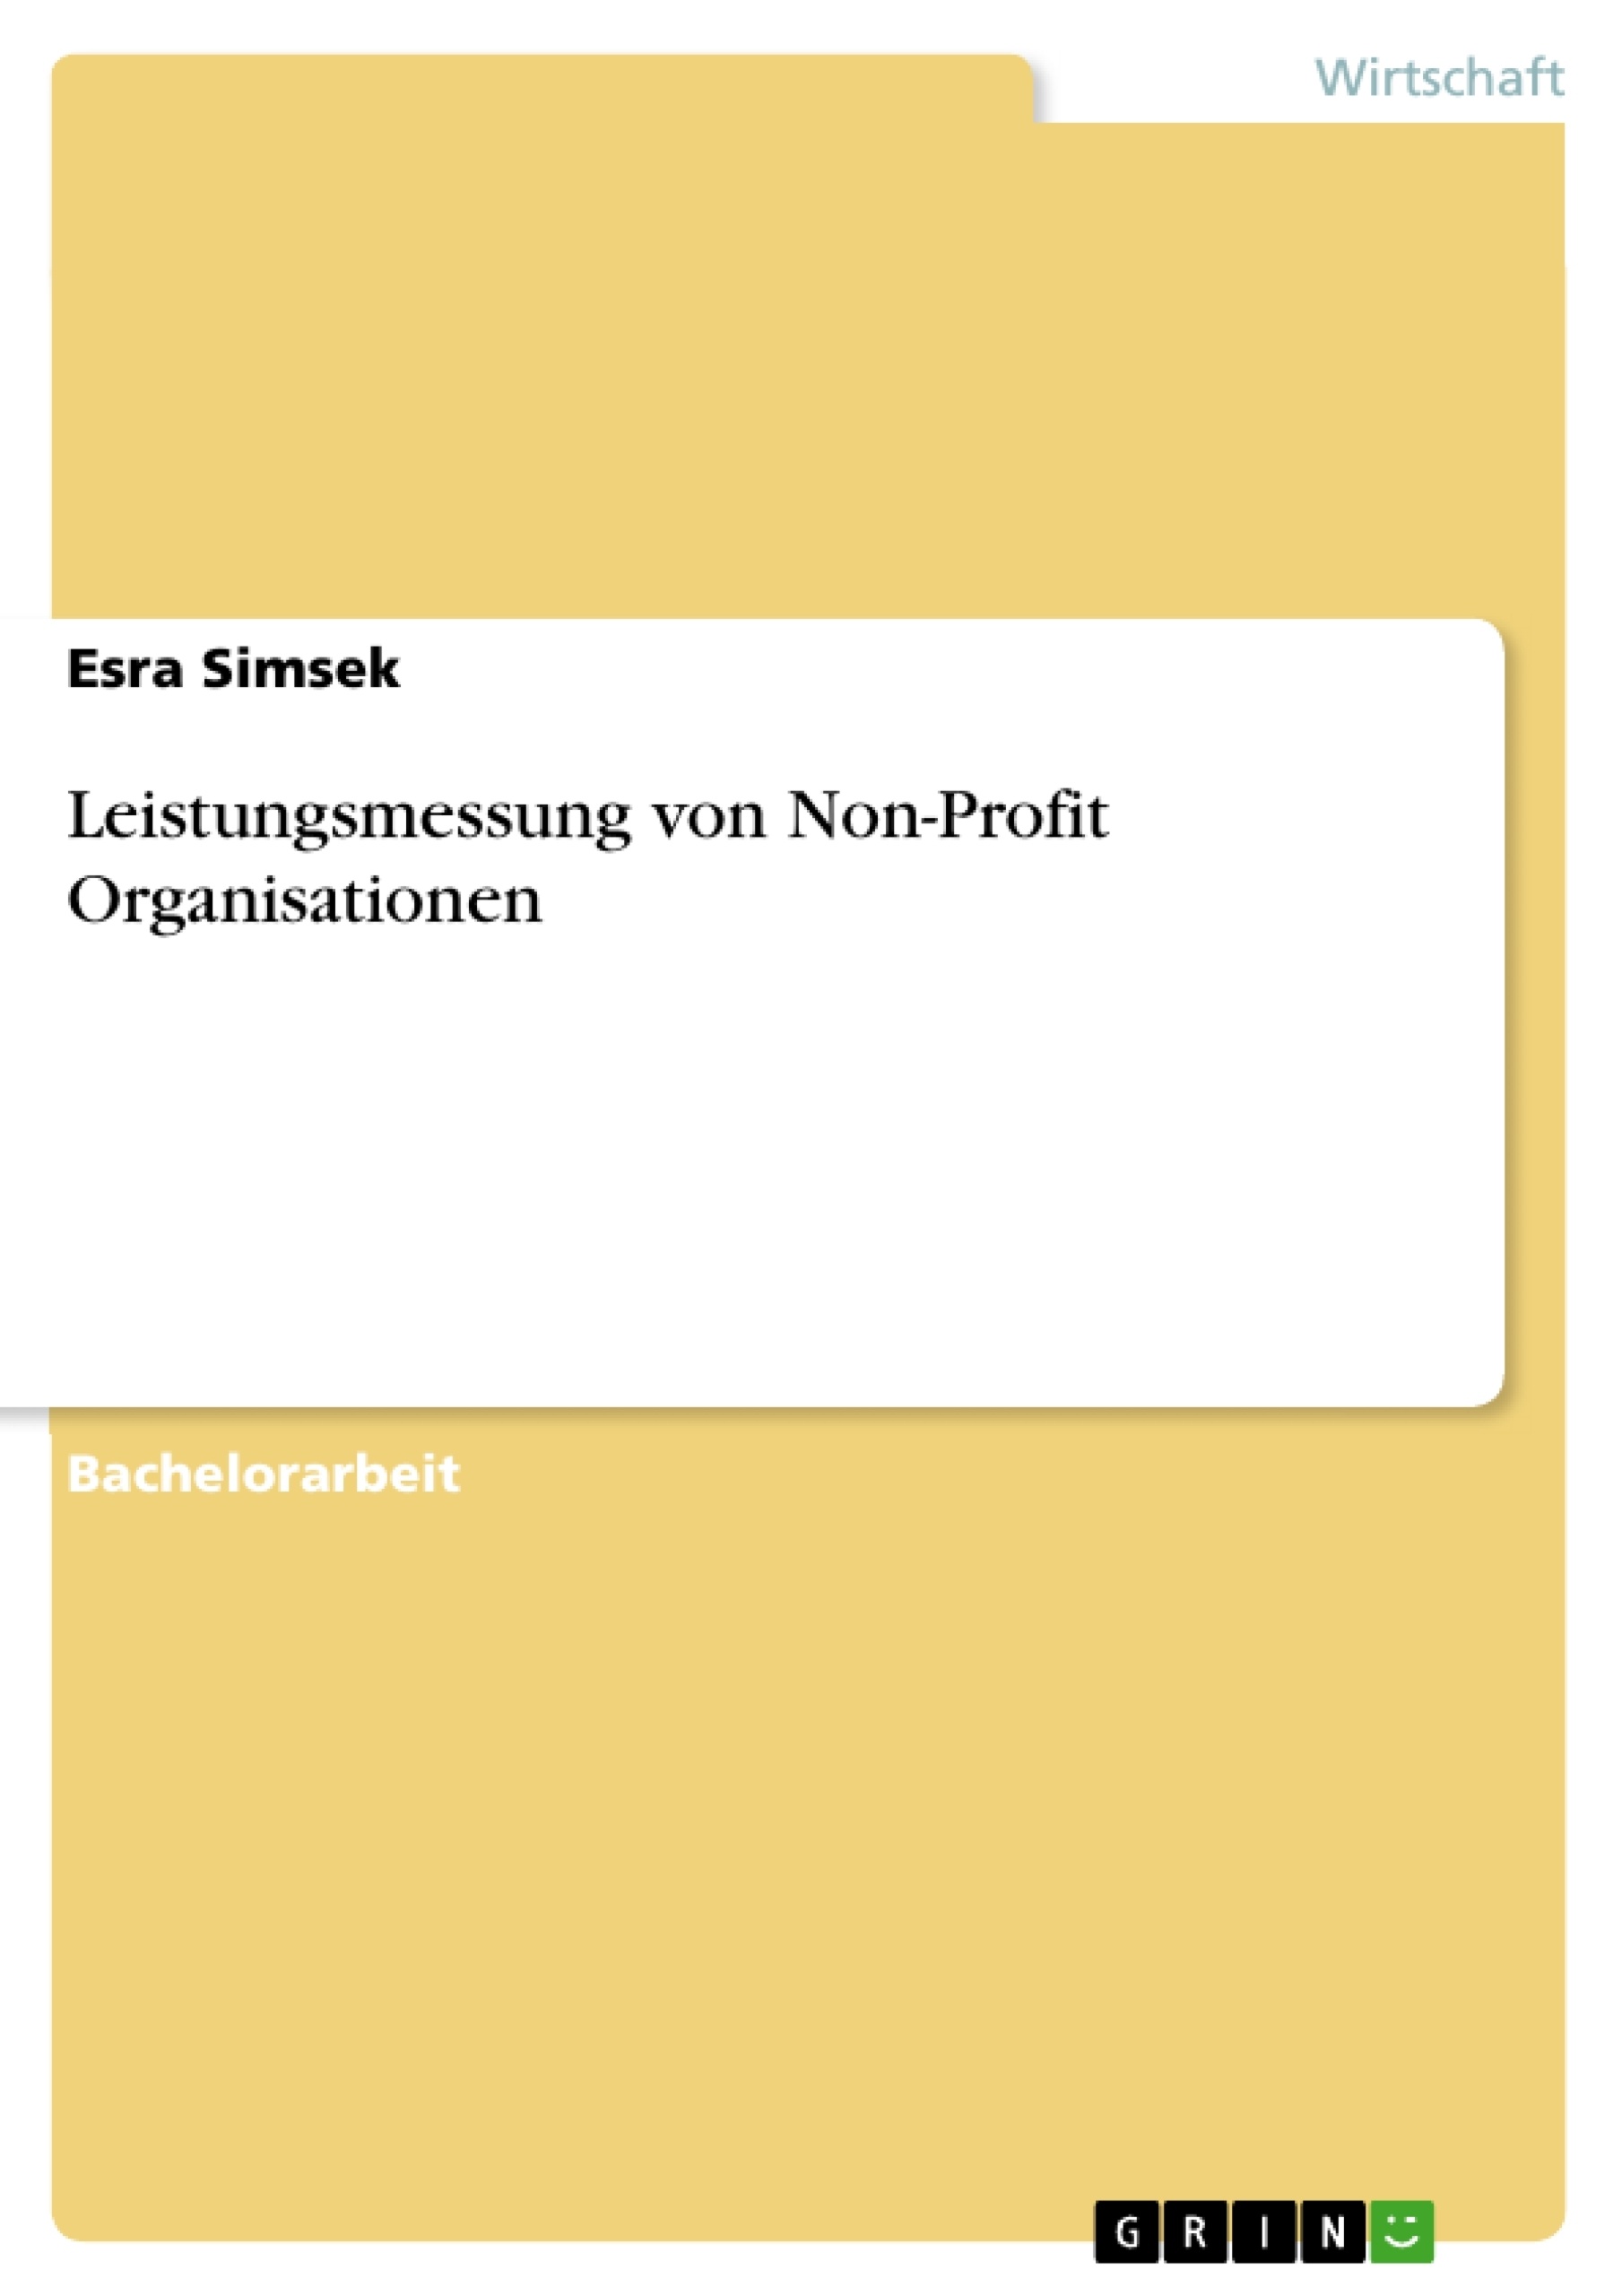 Título: Leistungsmessung von Non-Profit Organisationen